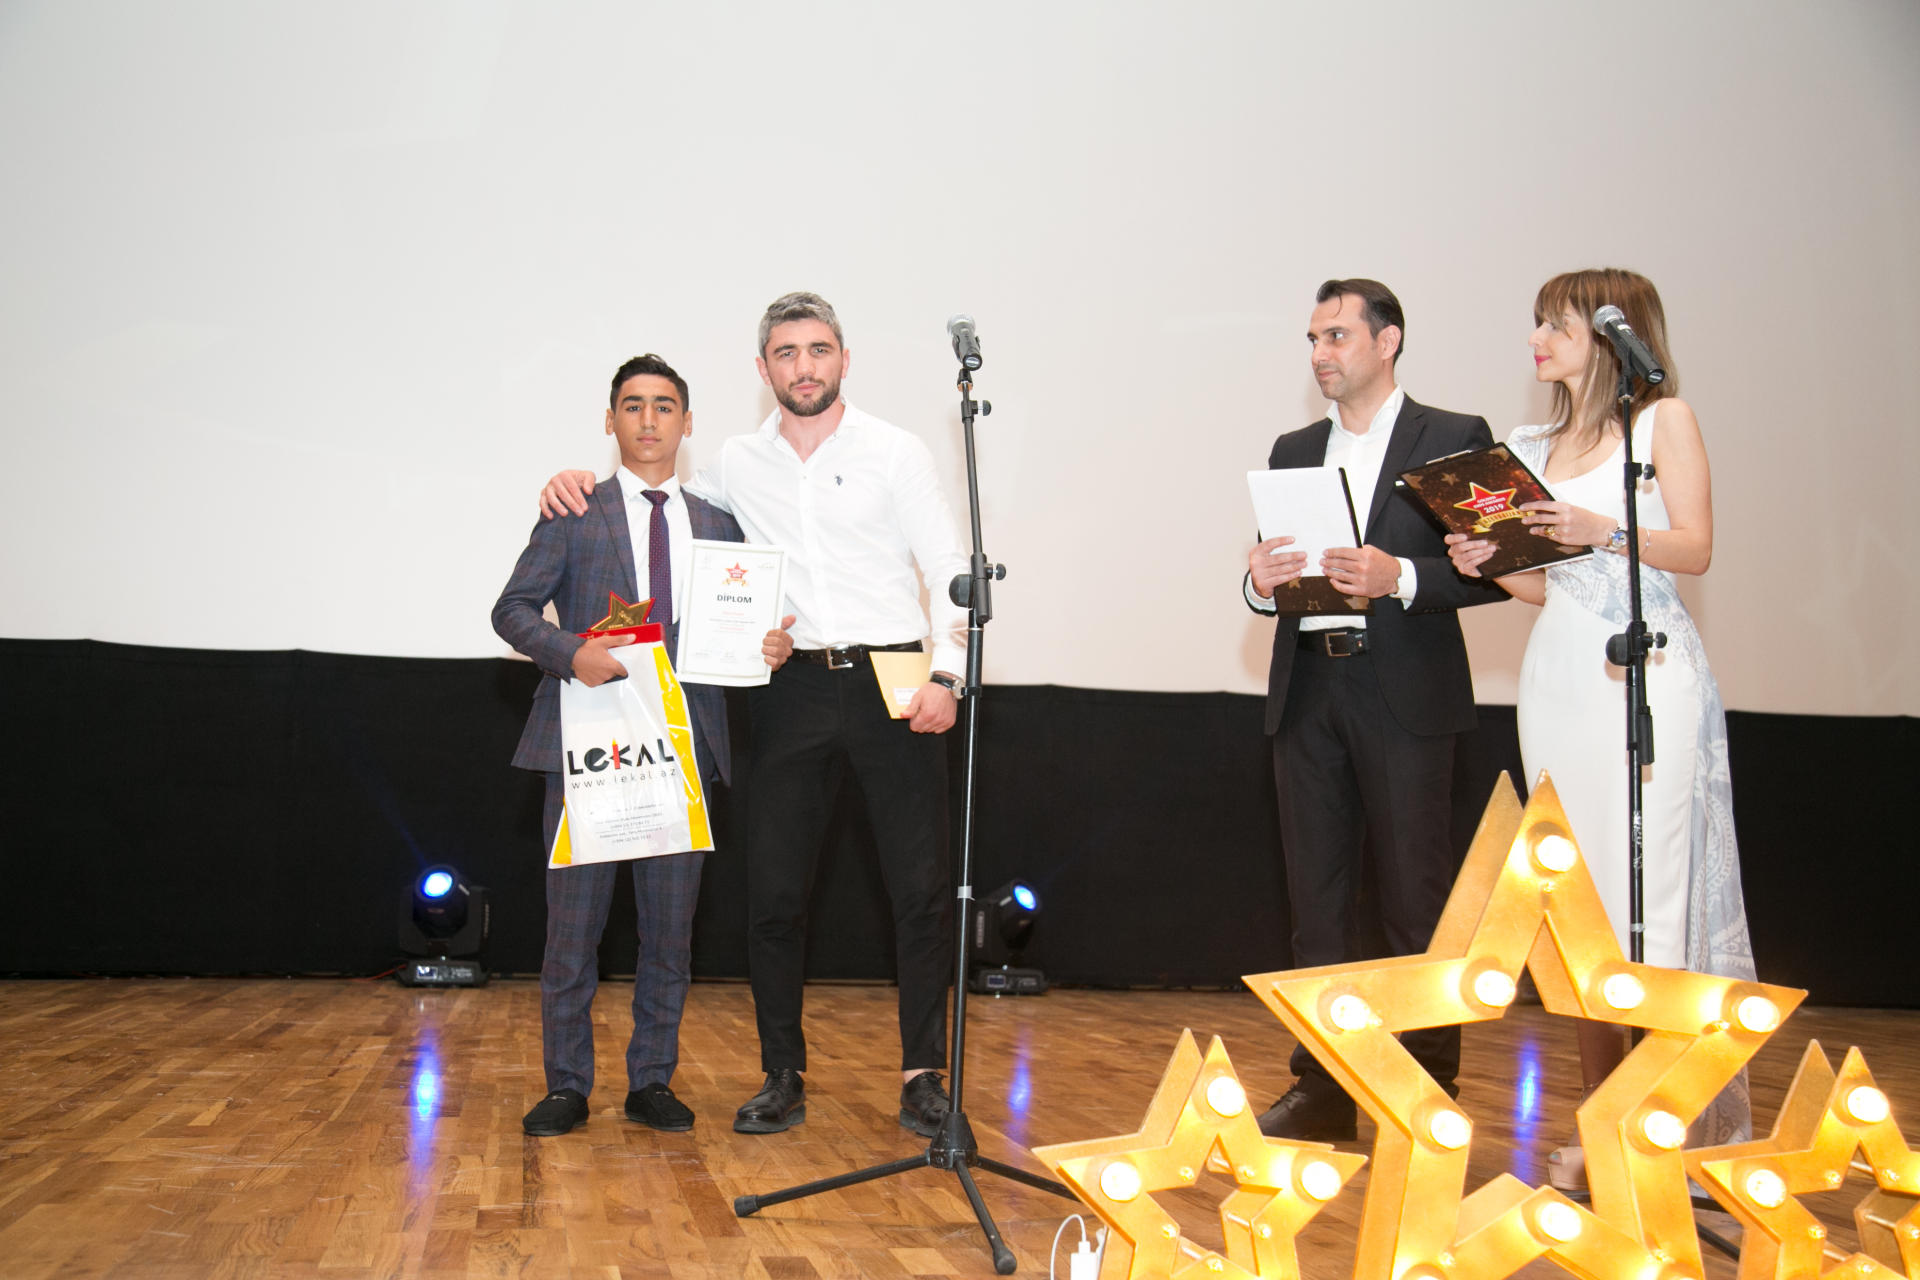 Определены "Золотые дети" Азербайджана - Azerbaijan Golden Kids Awards 2019 (ФОТО)